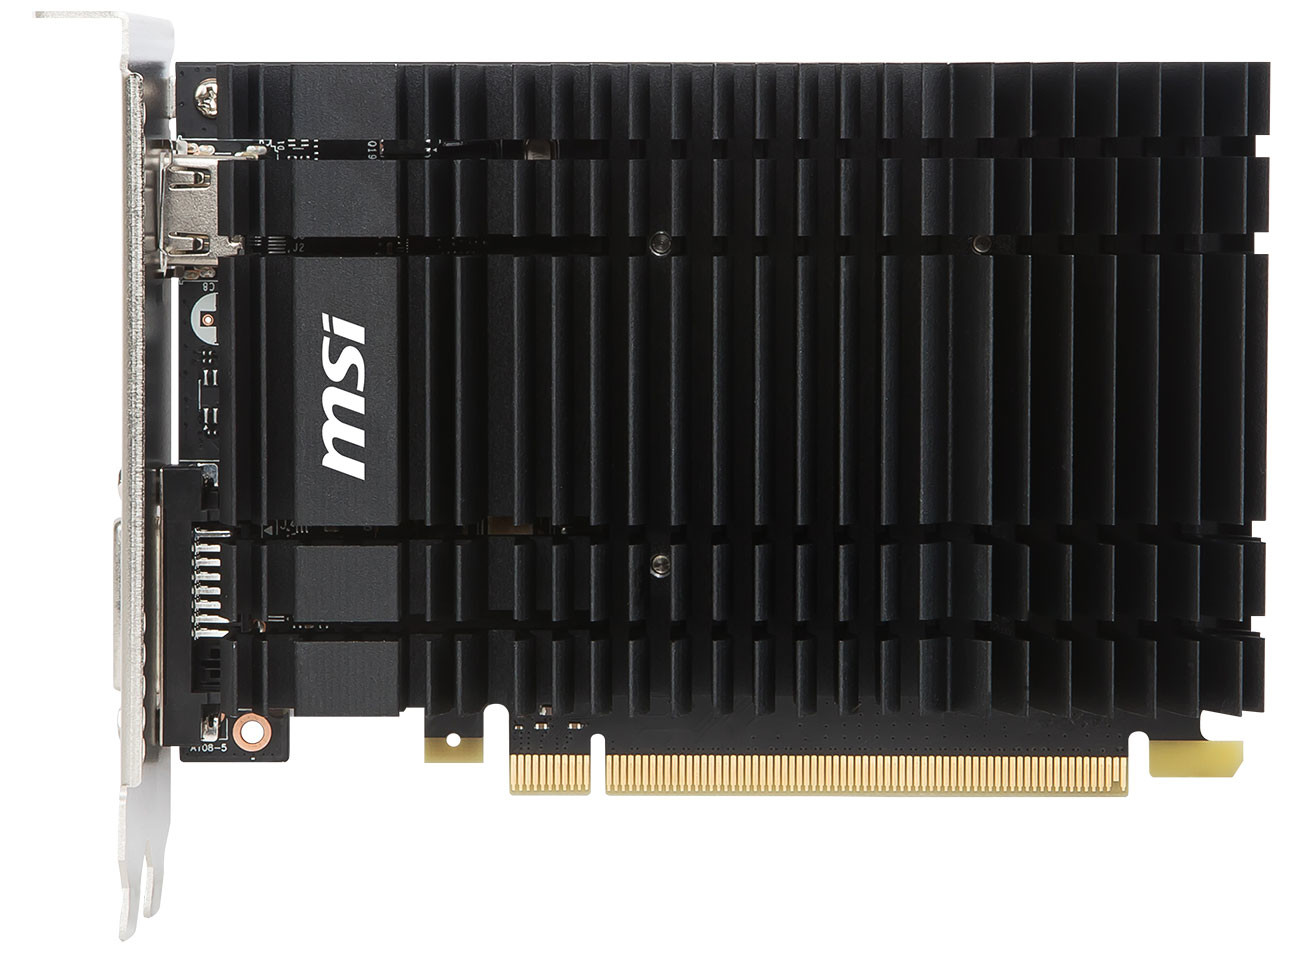 Immagine pubblicata in relazione al seguente contenuto: MSI lancia una GeForce GT 1030 factory-overclocked e con cooler passivo | Nome immagine: news26353_MSI-GeForce-GT-1030_1.jpg